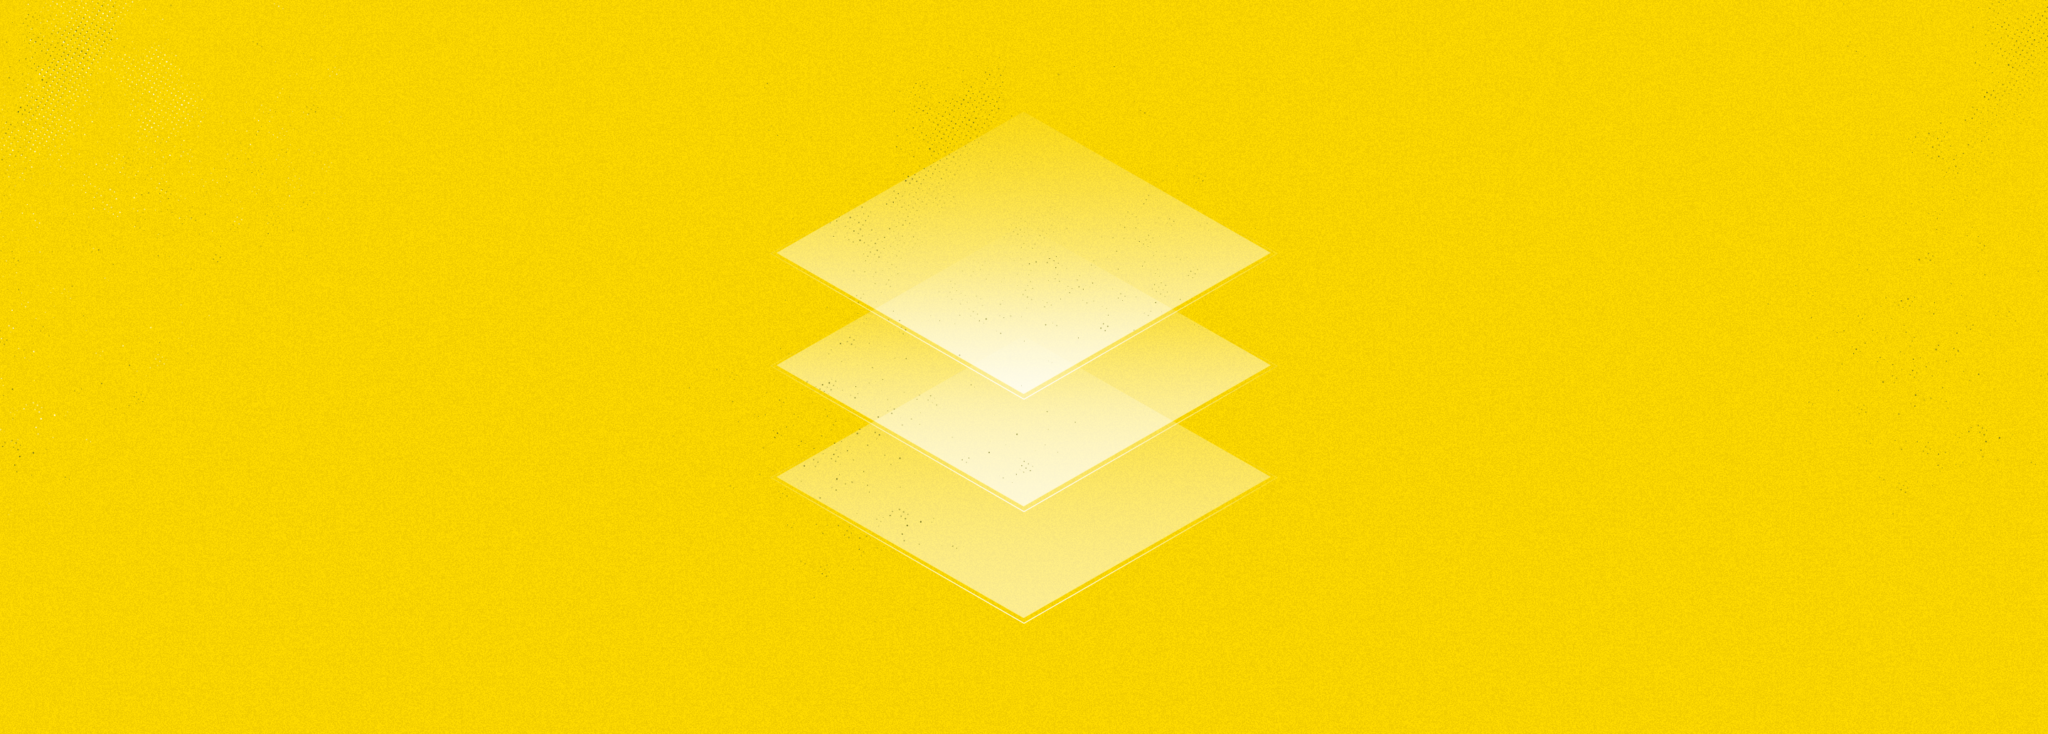 Kuva on graafinen ja keltainen ja siinä on päällekkäin kolme läpikuultavaa neliötä.